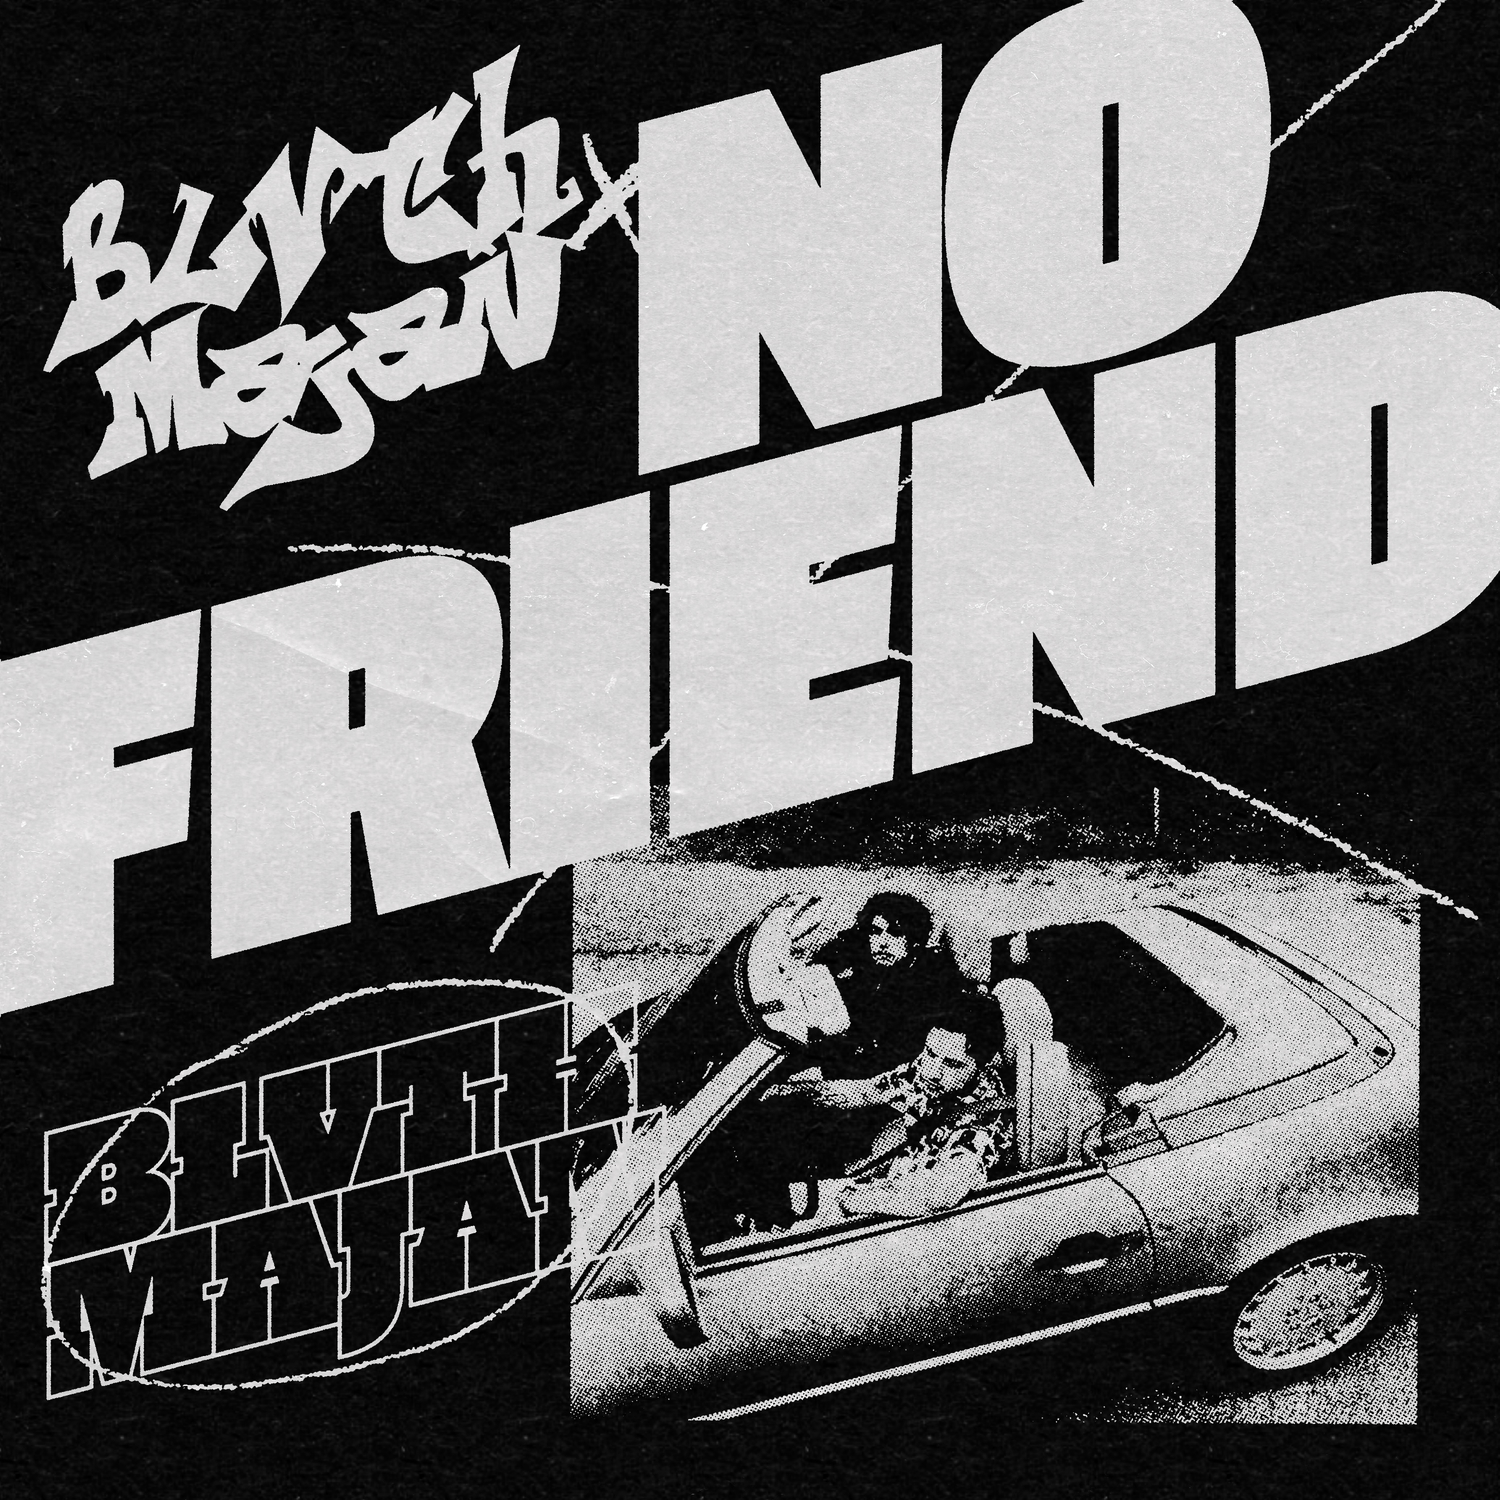 No Friend